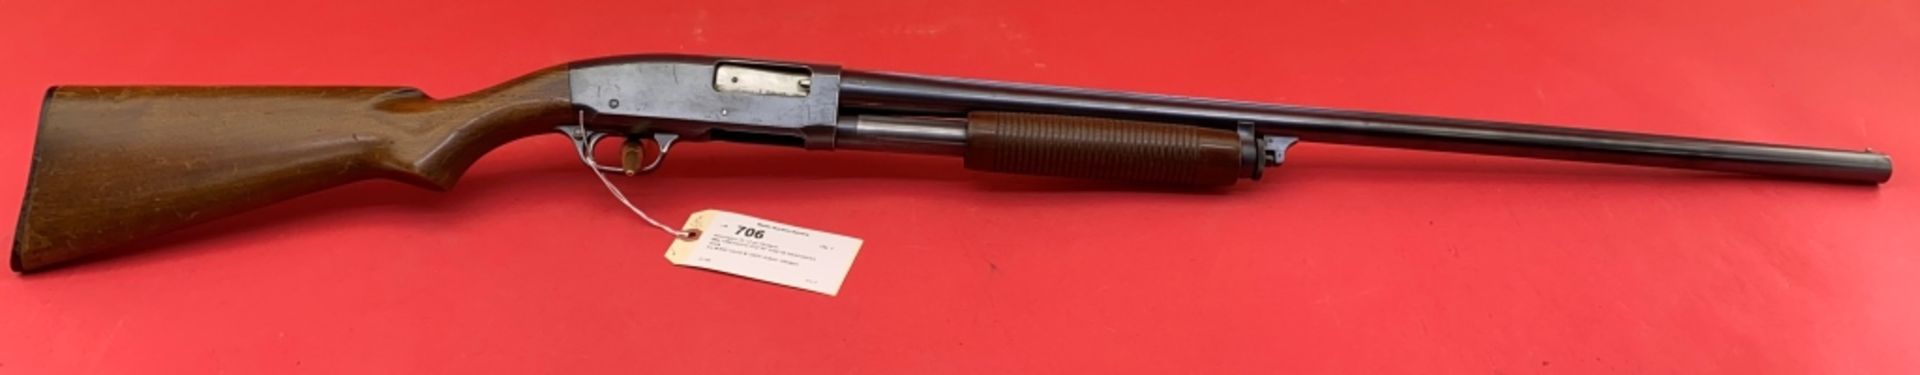 Remington 31 12 ga Shotgun